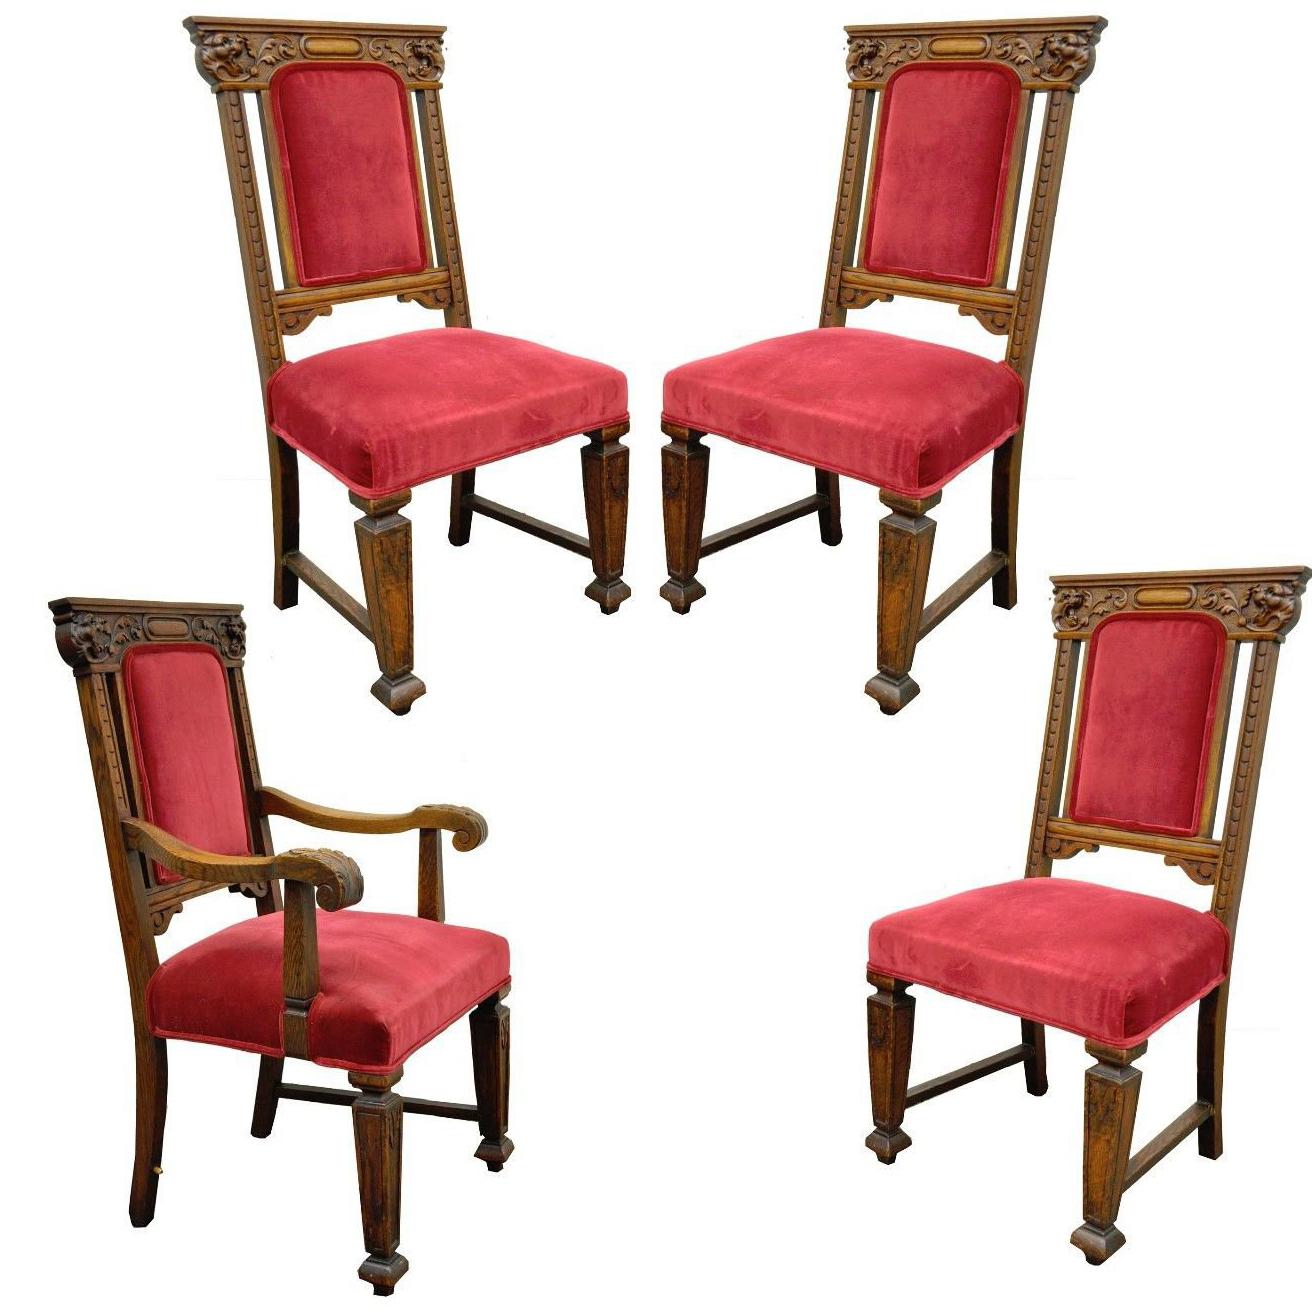 Quatre chaises de salle à manger anciennes en chêne sculpté à bras en forme de lion, de style néo-Renaissance